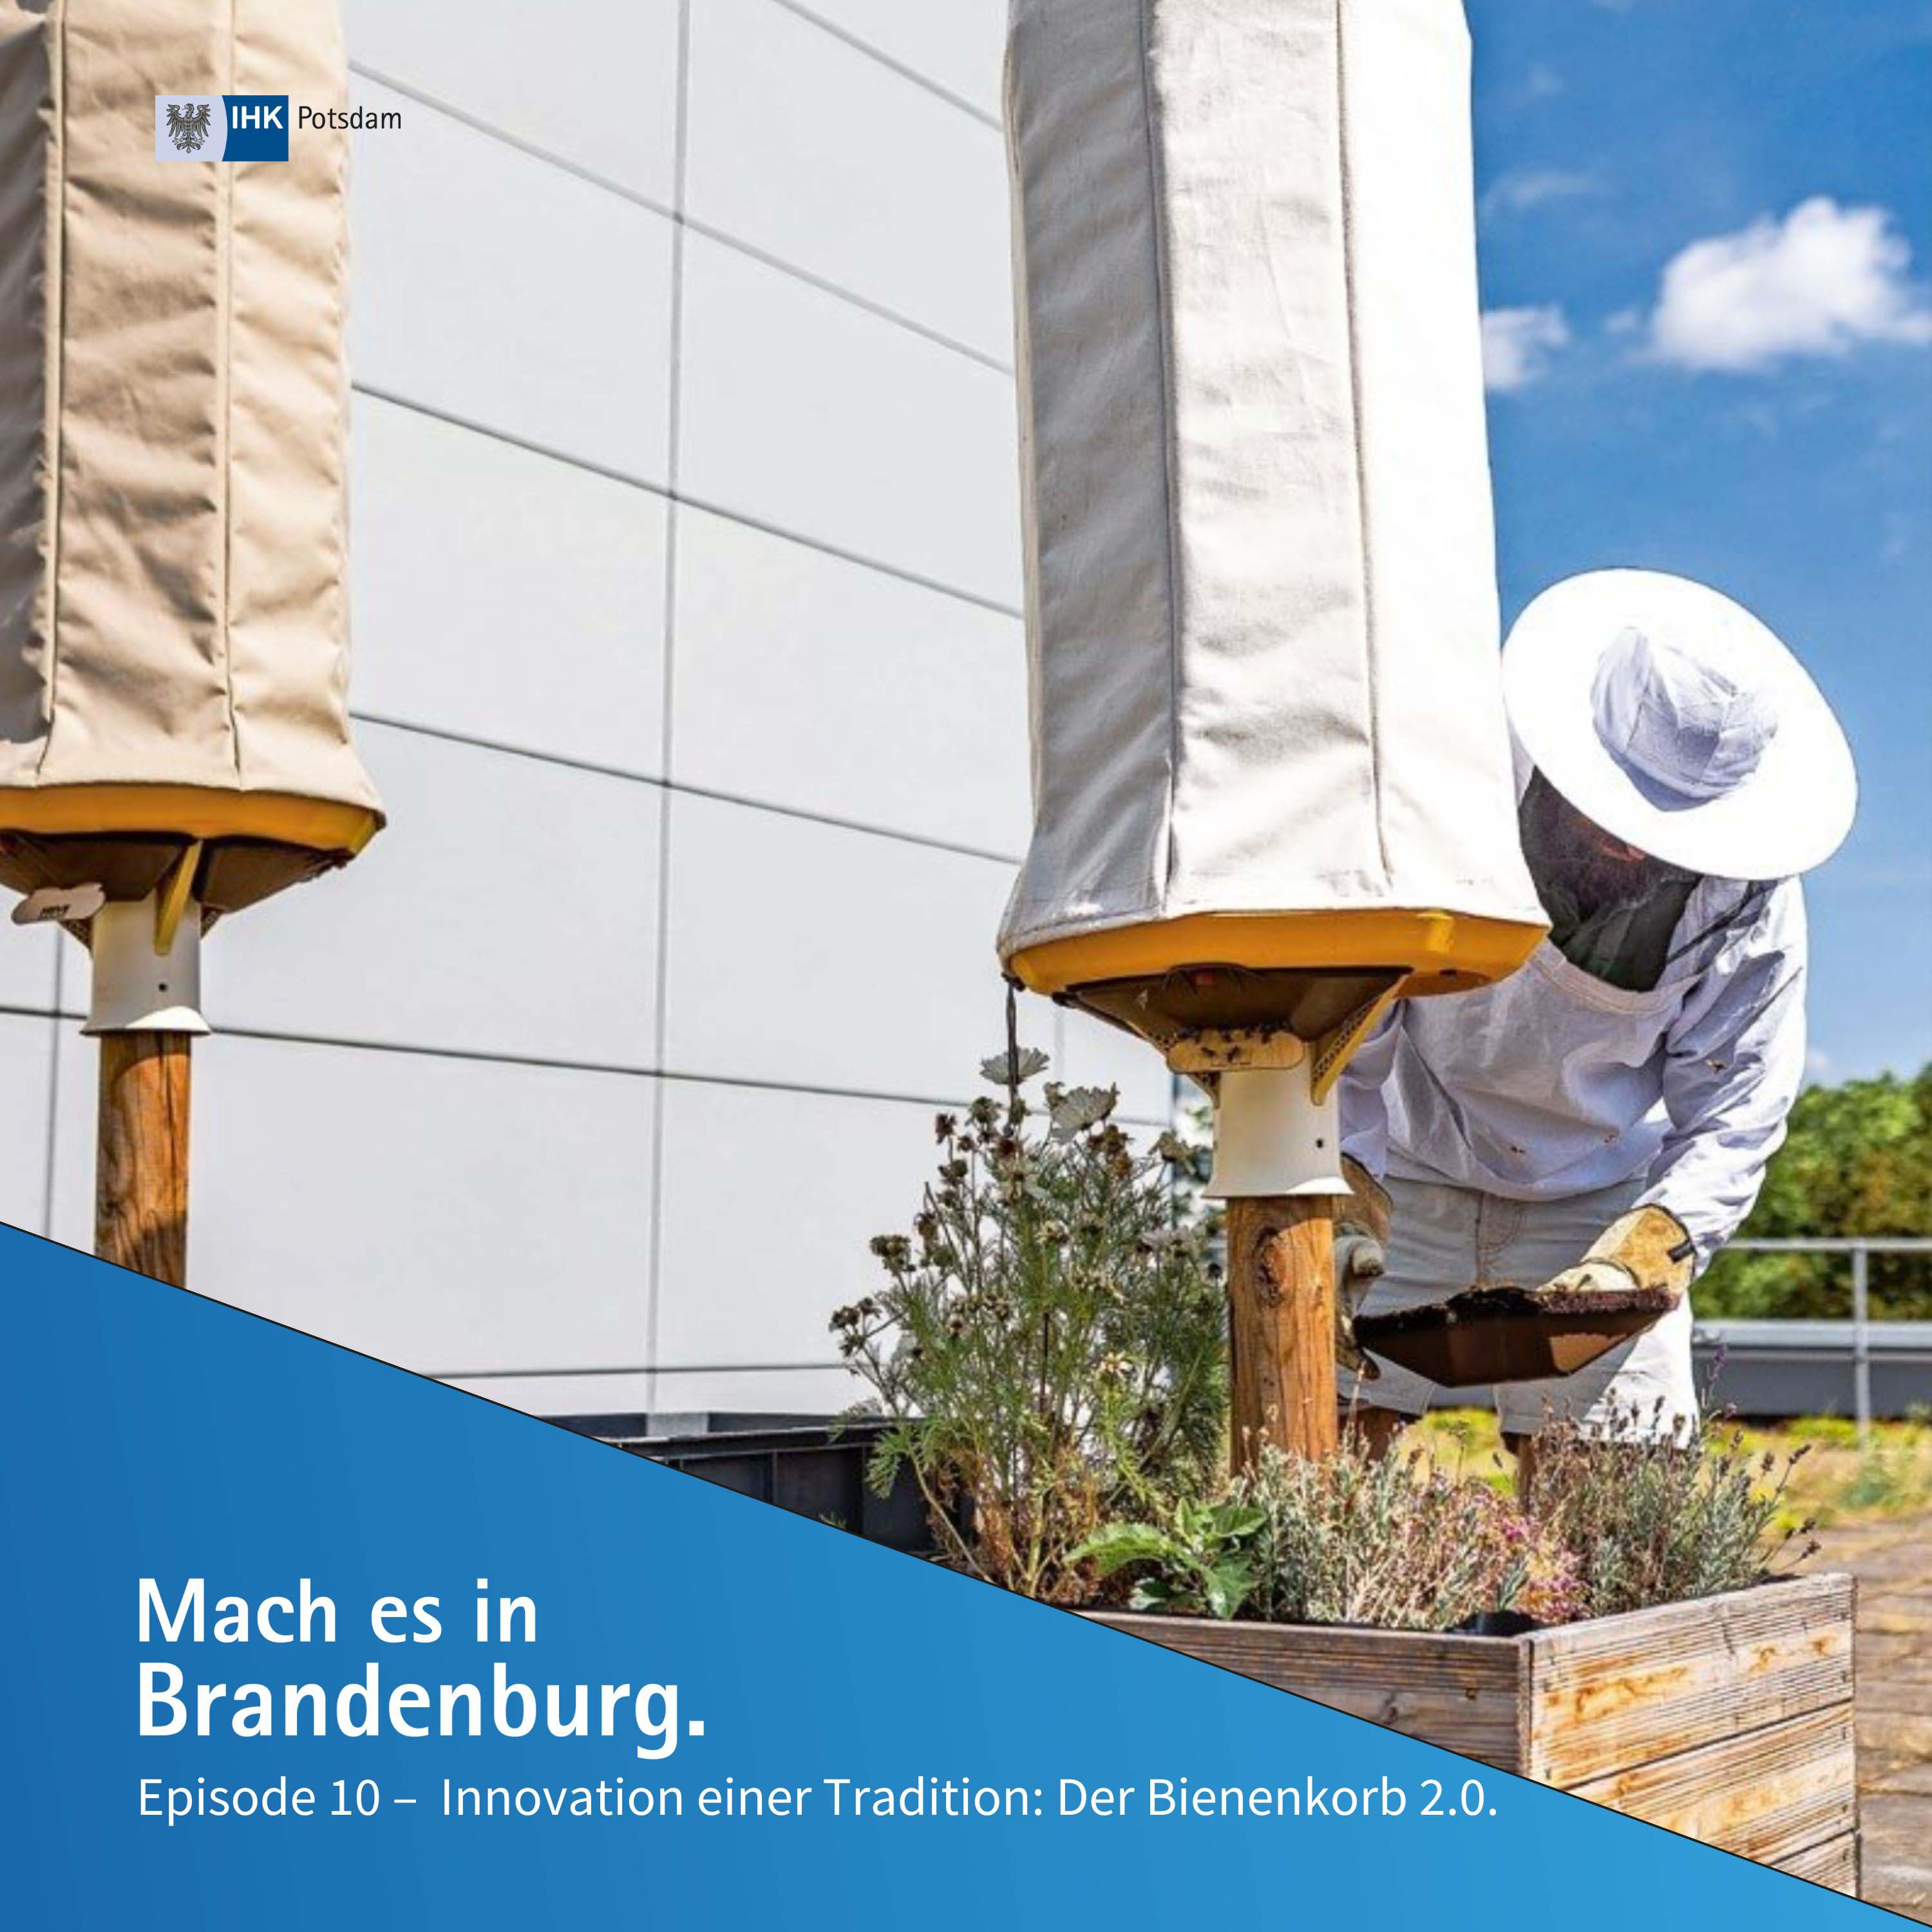 Innovation einer Tradition, der Bienenkorb 2.0  Mach es in Brandenburg  (10) - Mach es in Brandenburg - Podcast